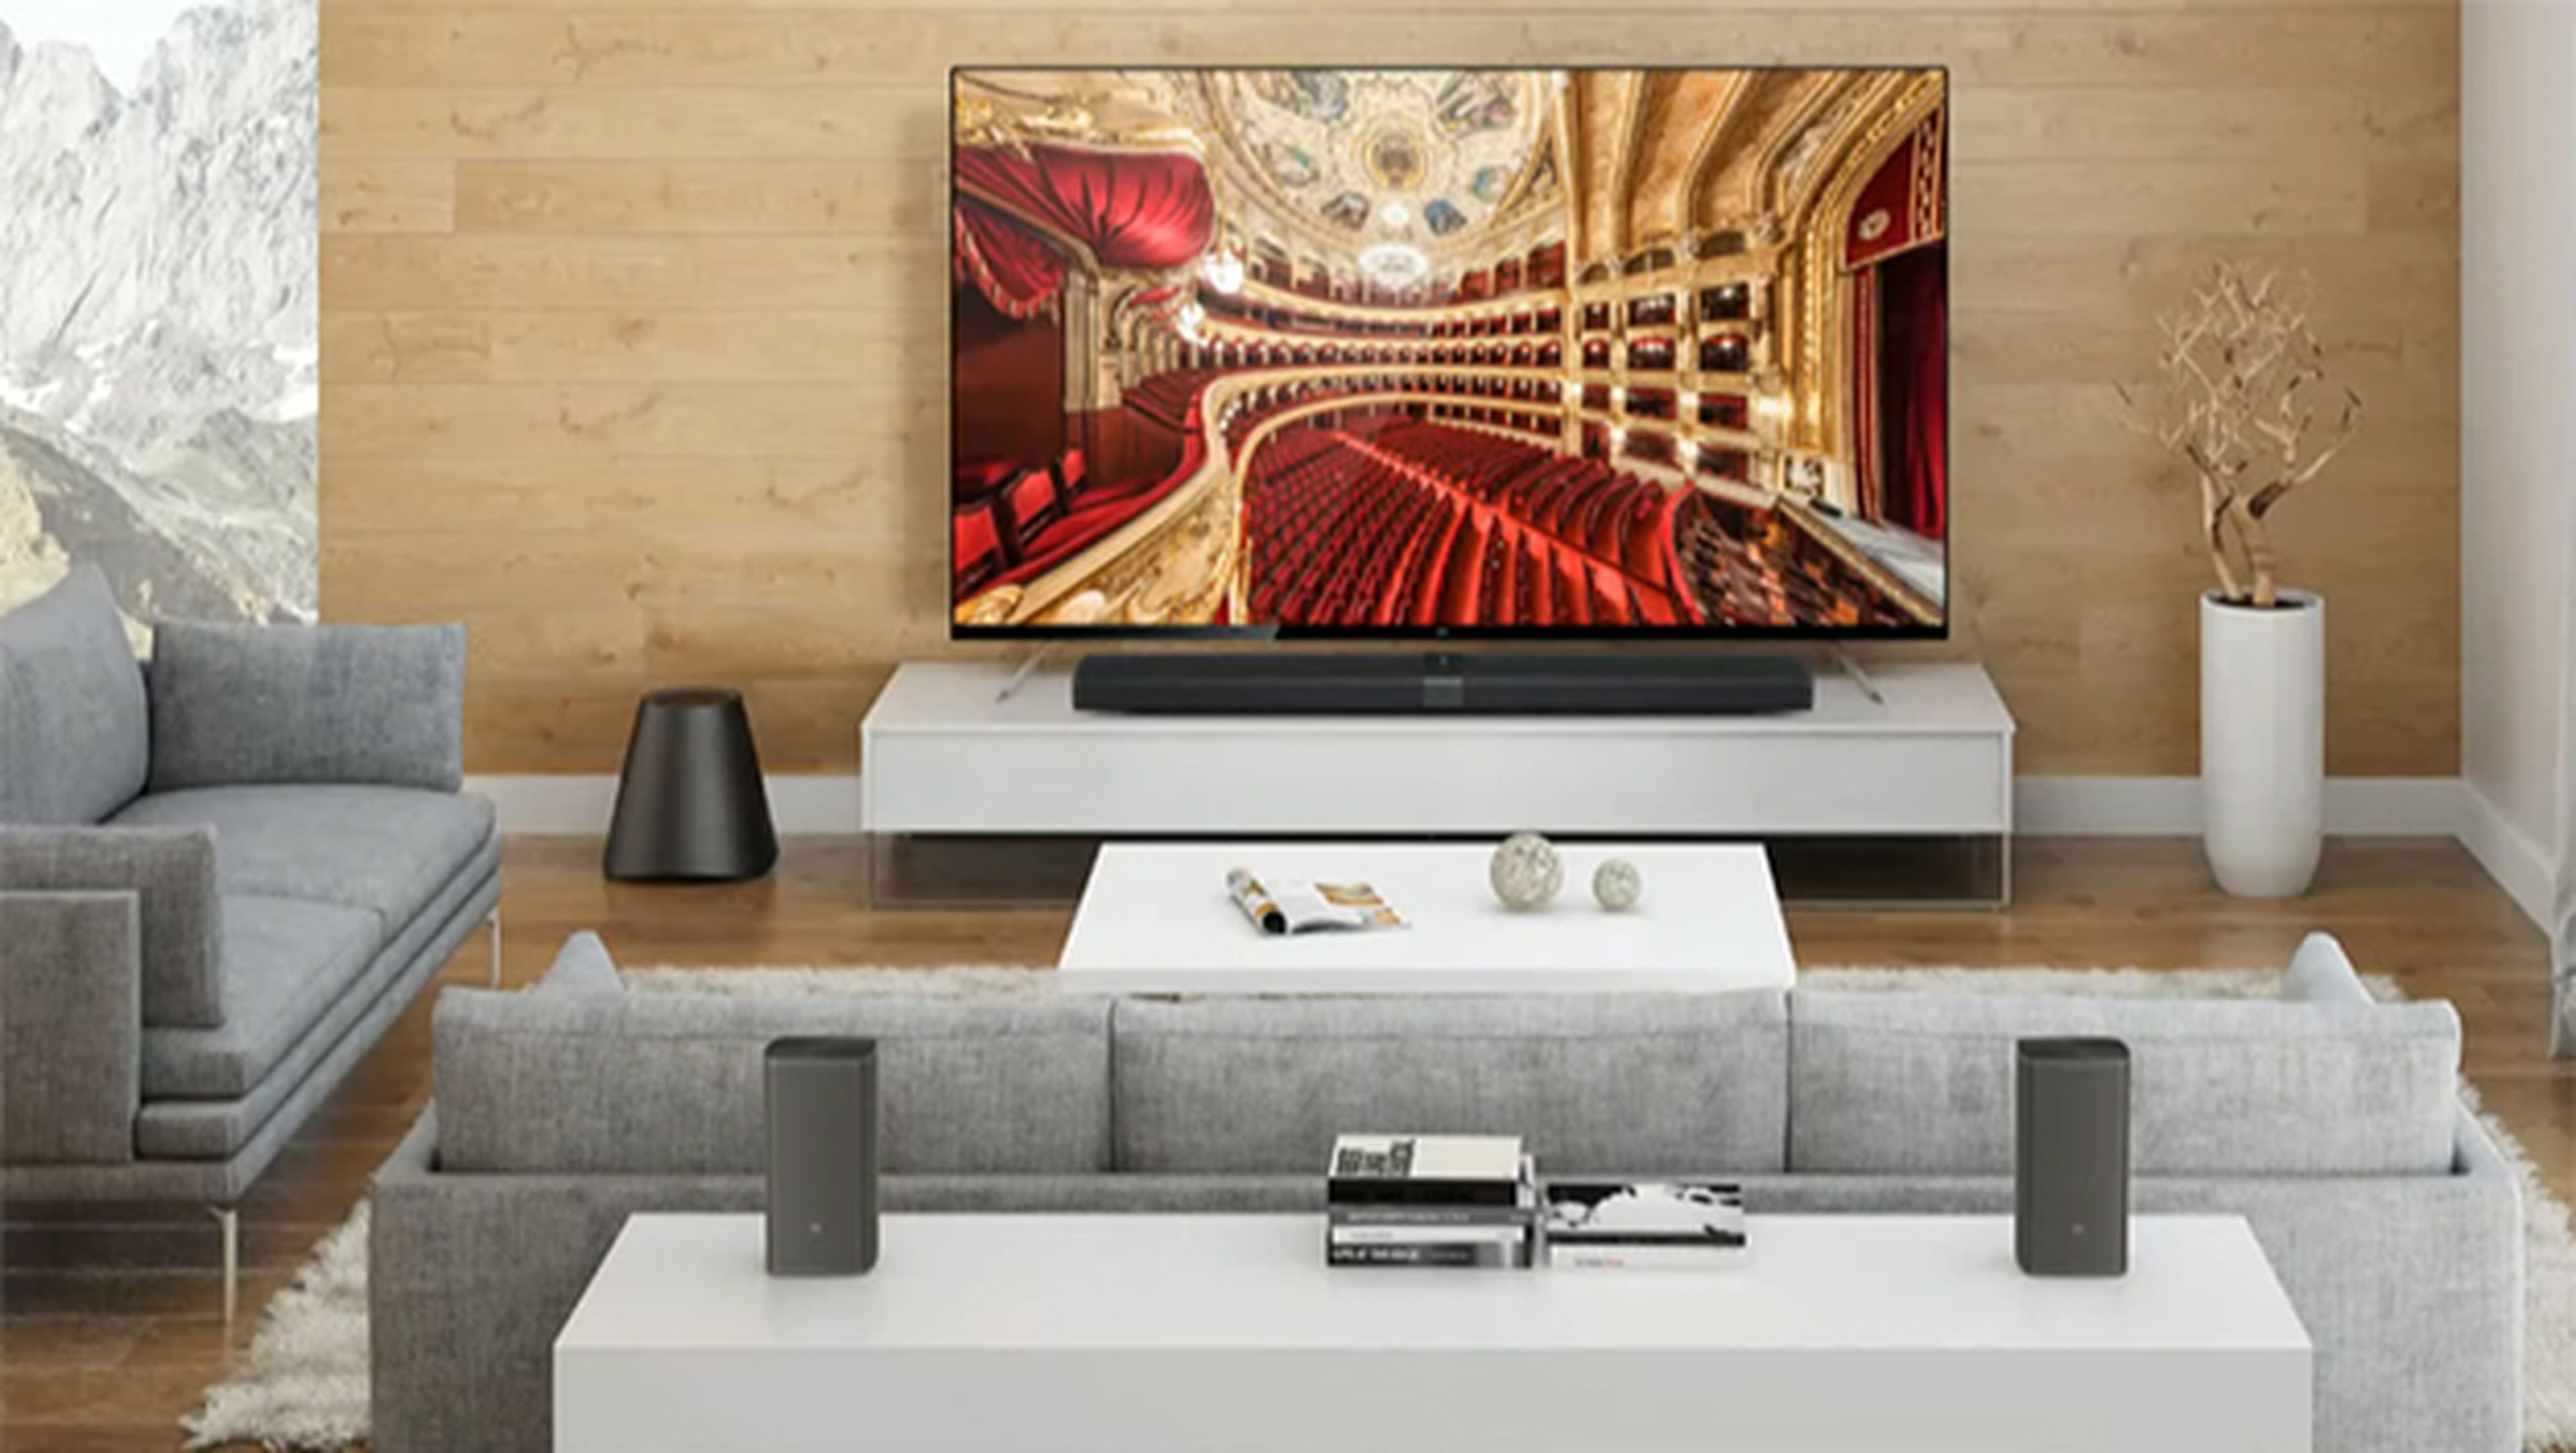 Mi TV 4, el nuevo televisor modular de Xiaomi